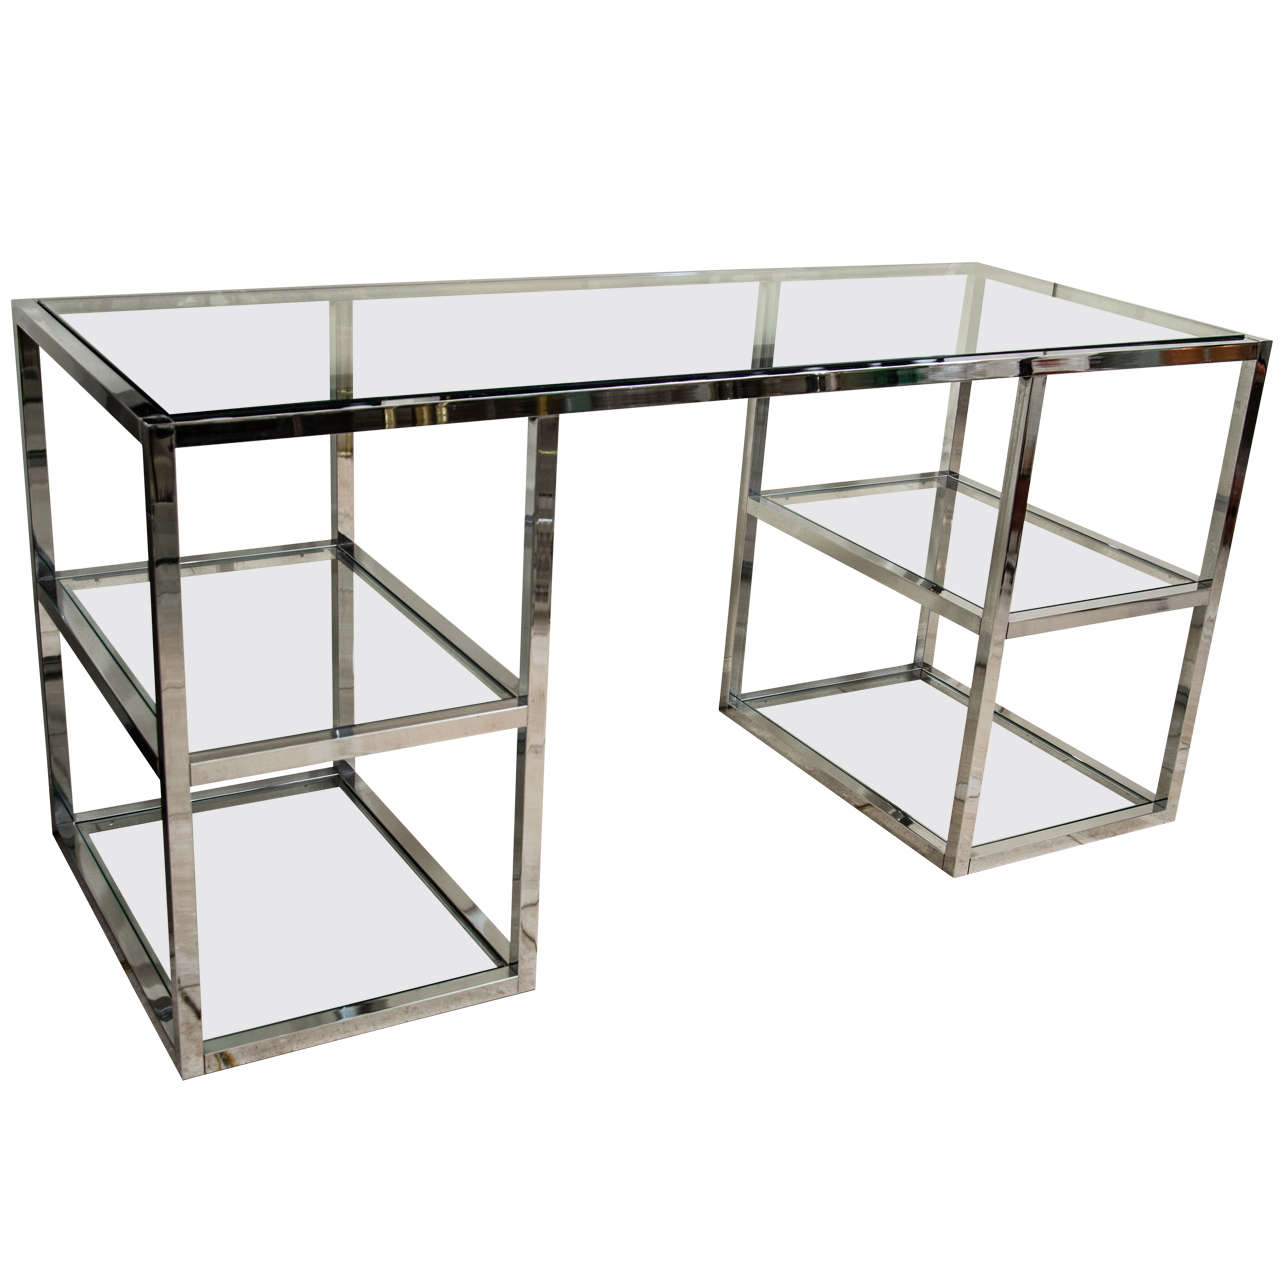 Chrome and glass four shelf desk